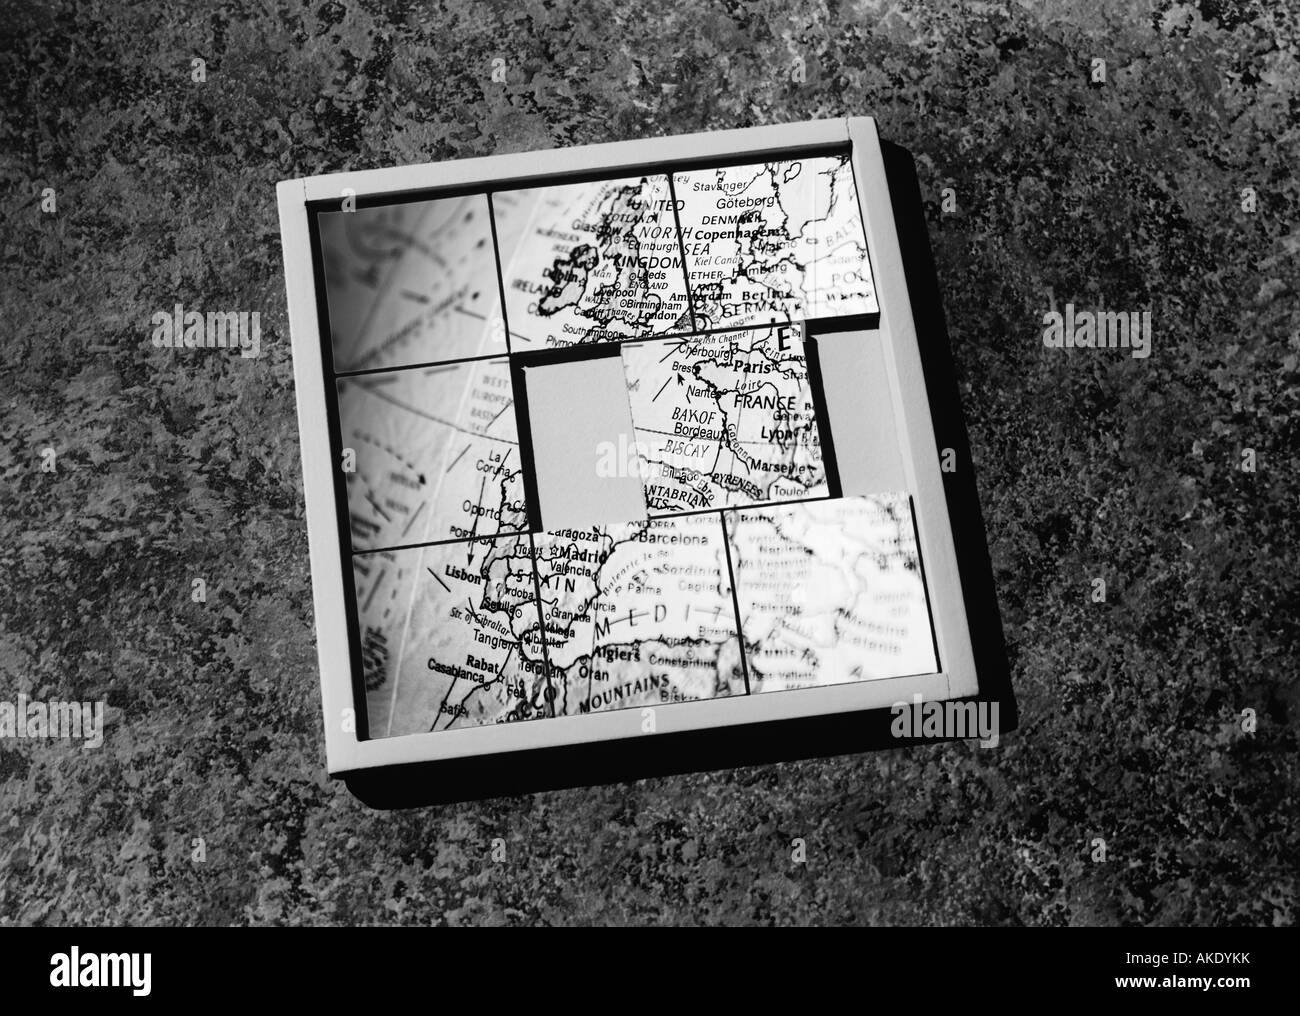 Faites glisser-puzzle mélangé avec la carte, (b&w Photo Stock - Alamy